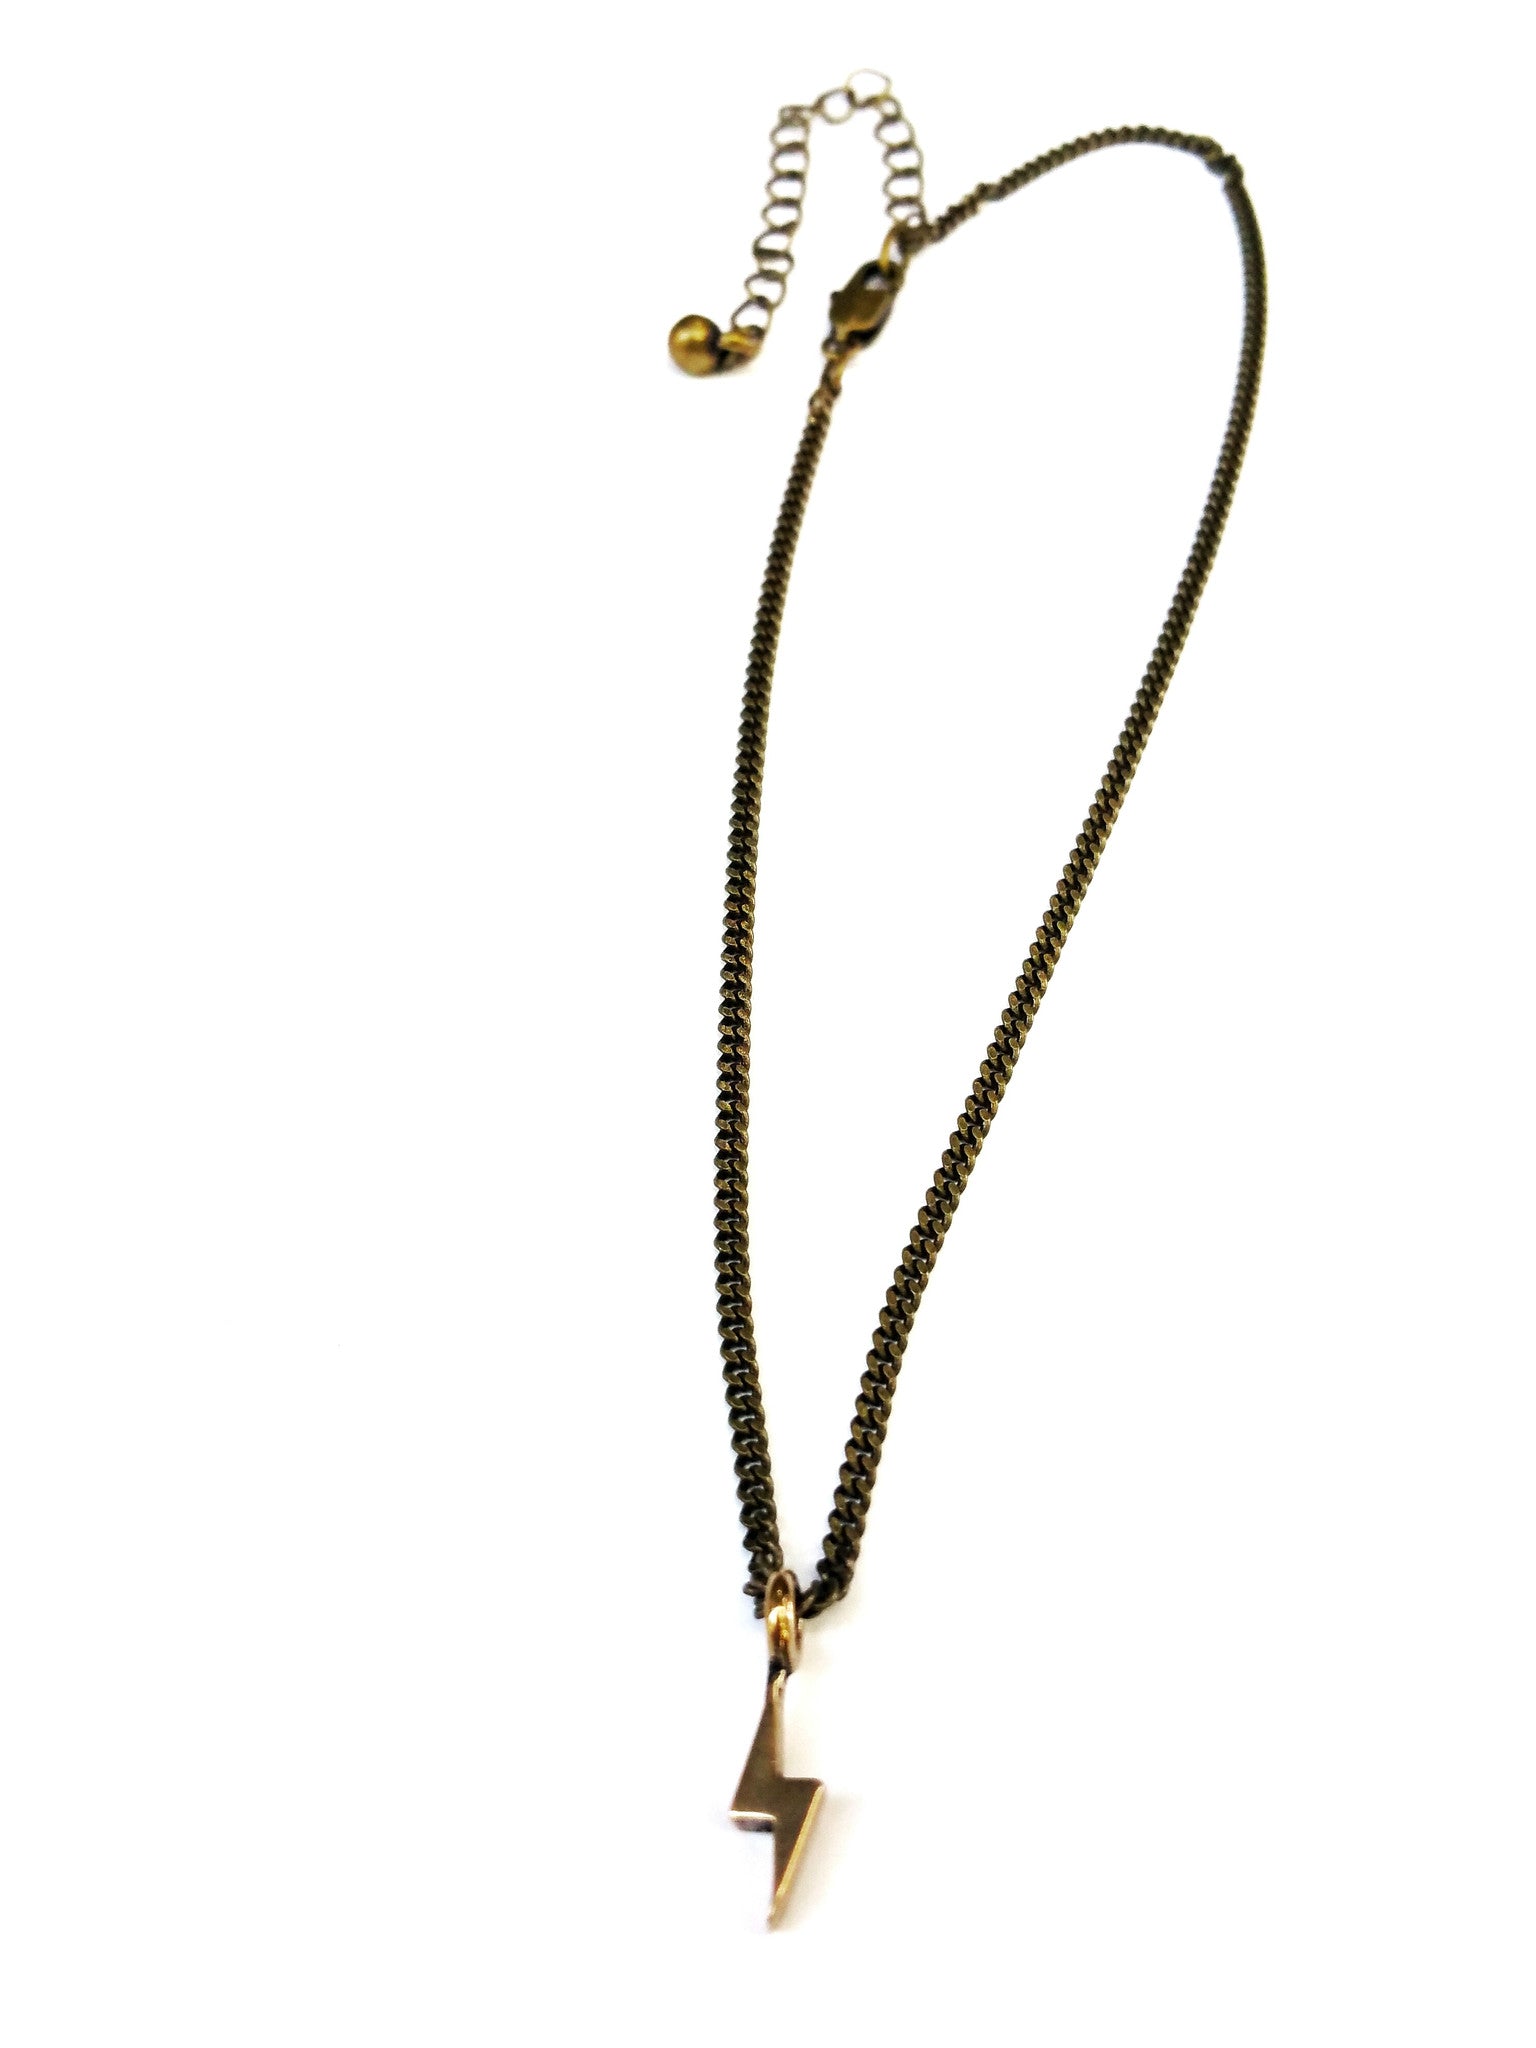 Rocker Bolt Necklace - Red Bronze HONOR EMBLEM Jewelry Choker